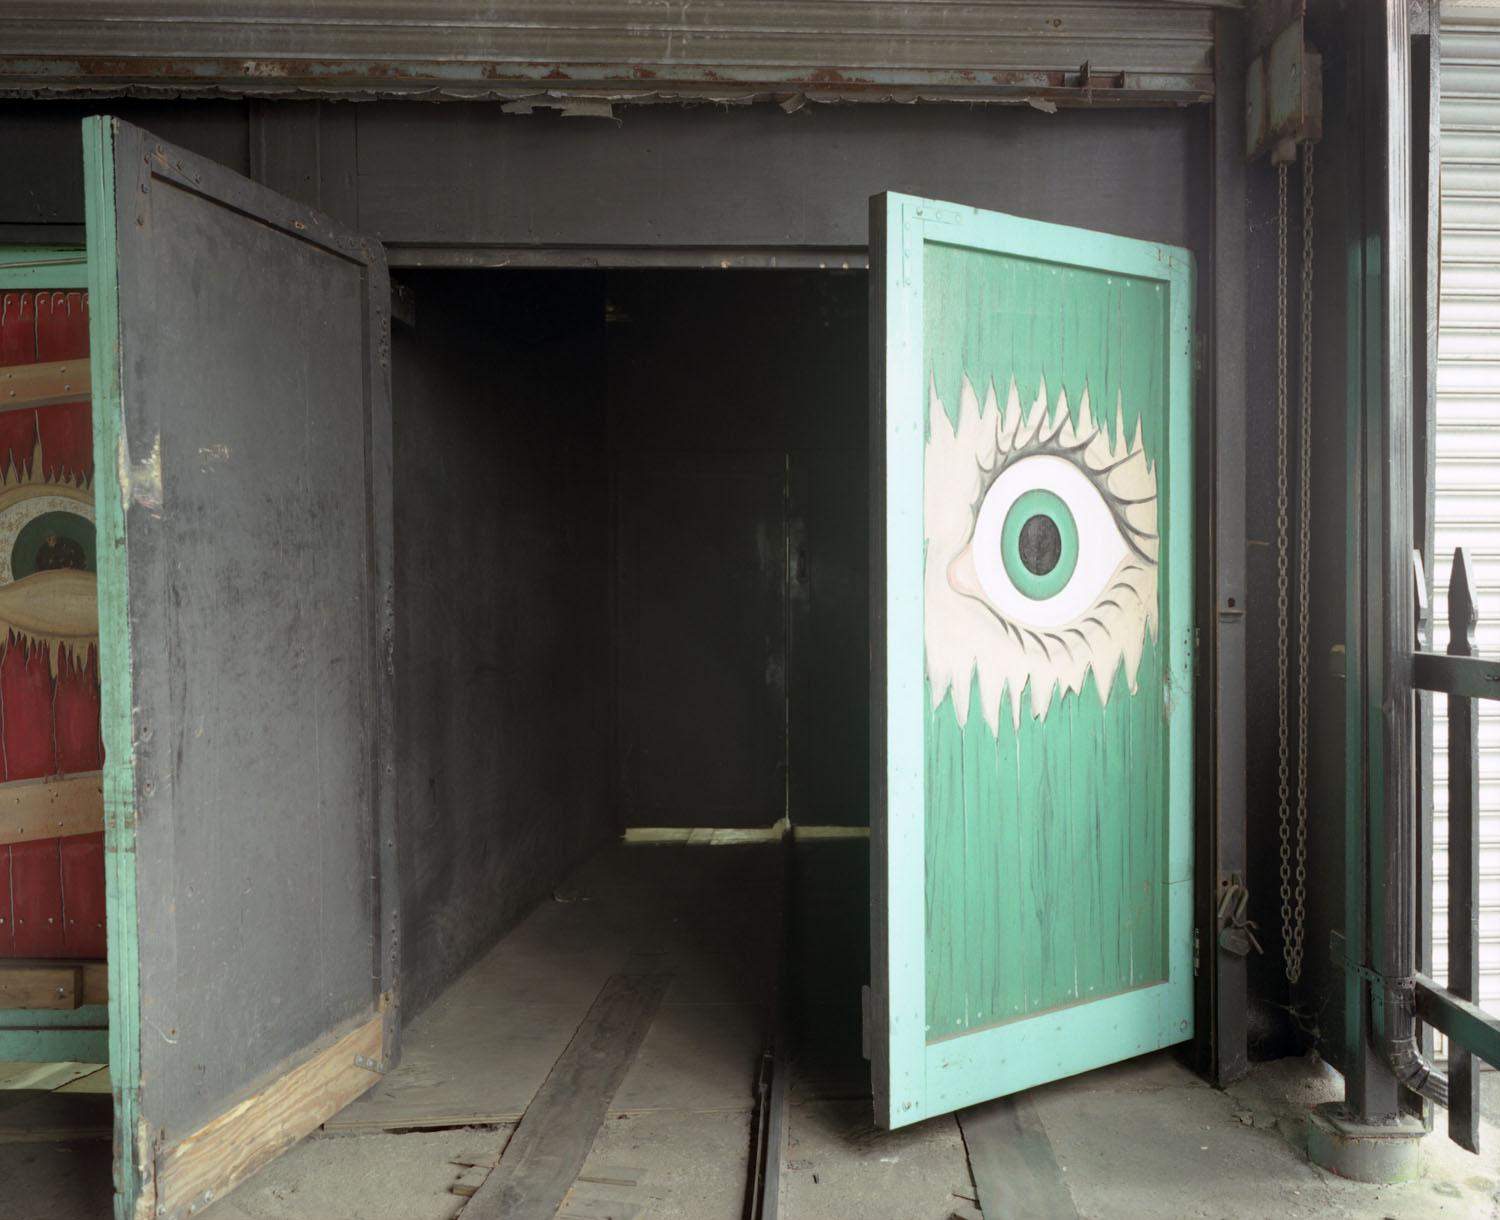 Image: Eye on door